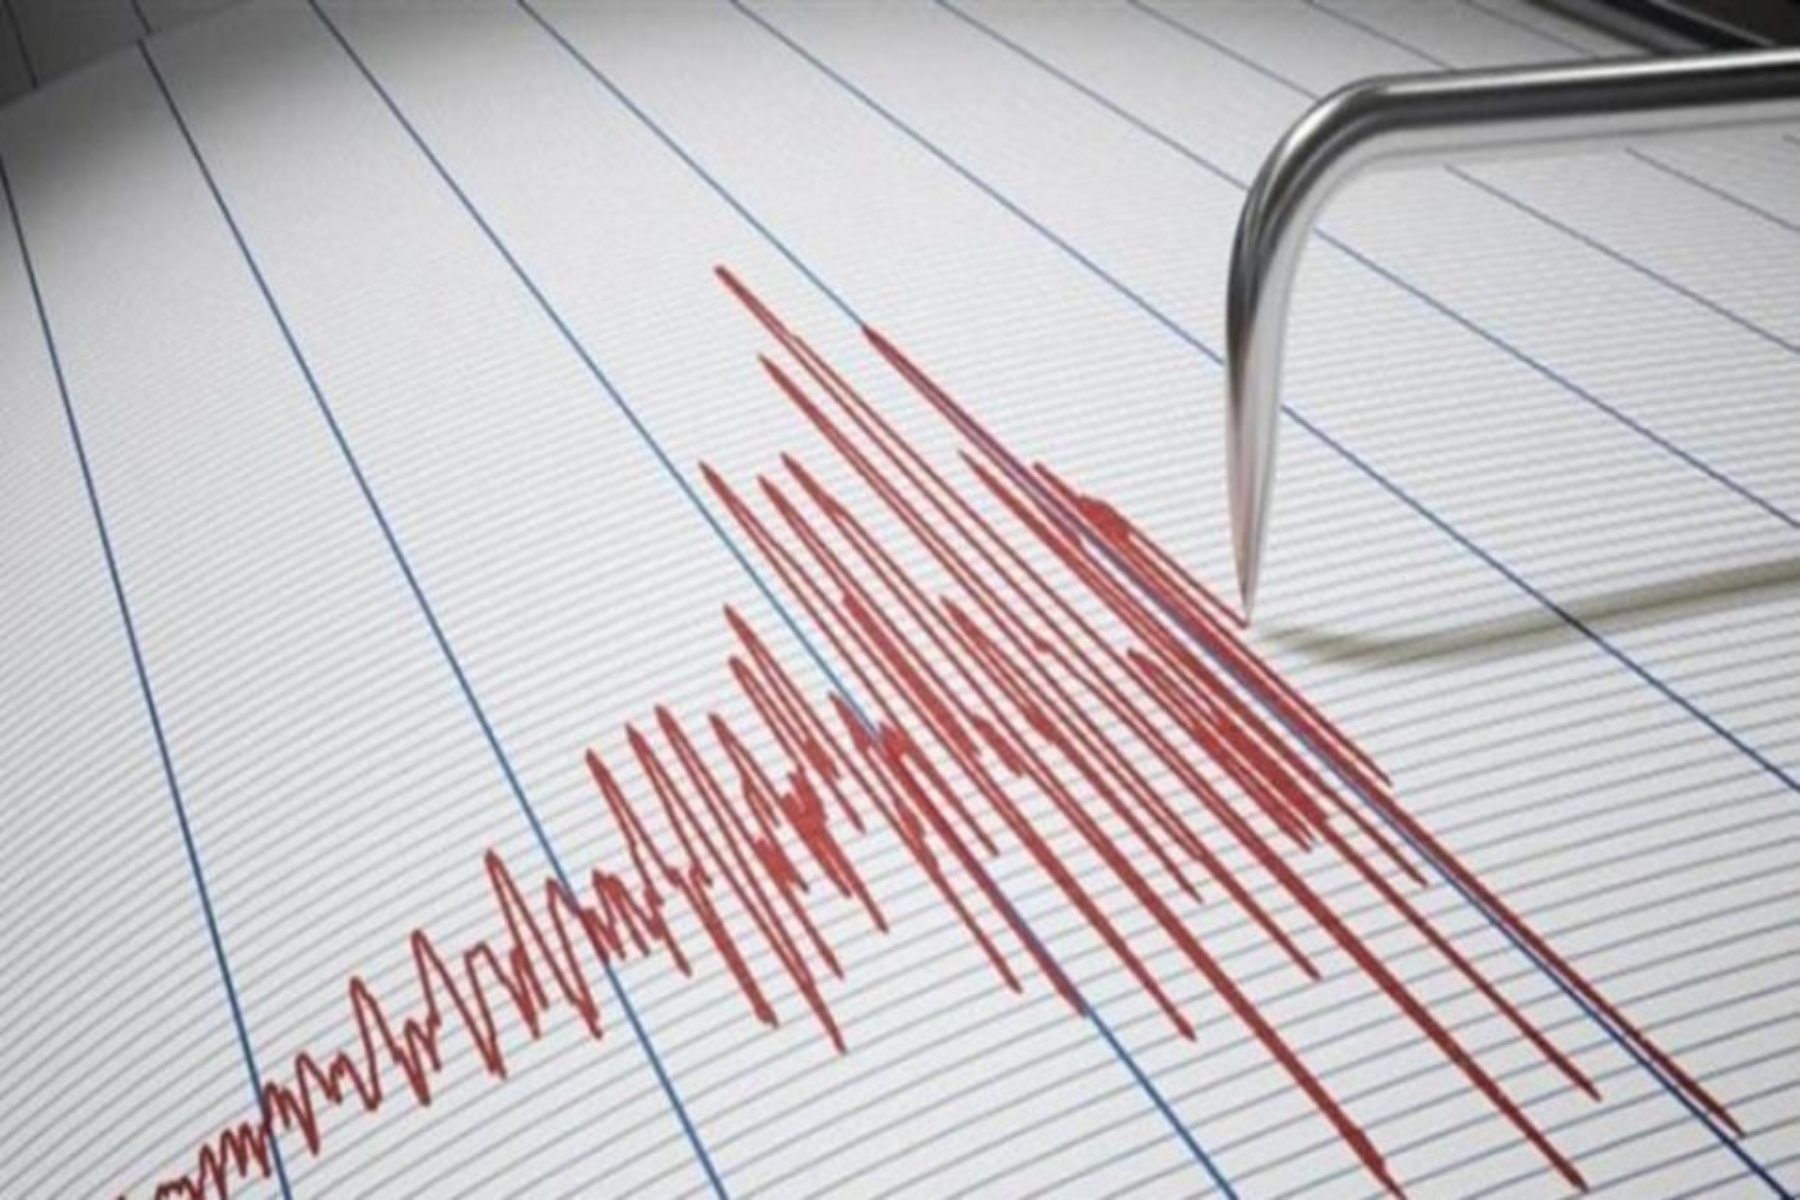 Σεισμός τώρα: Σεισμική δόνηση 3,7 ρίχτερ στην Αγία Μαρίνα – Αισθητός ο σεισμός στην Αττική